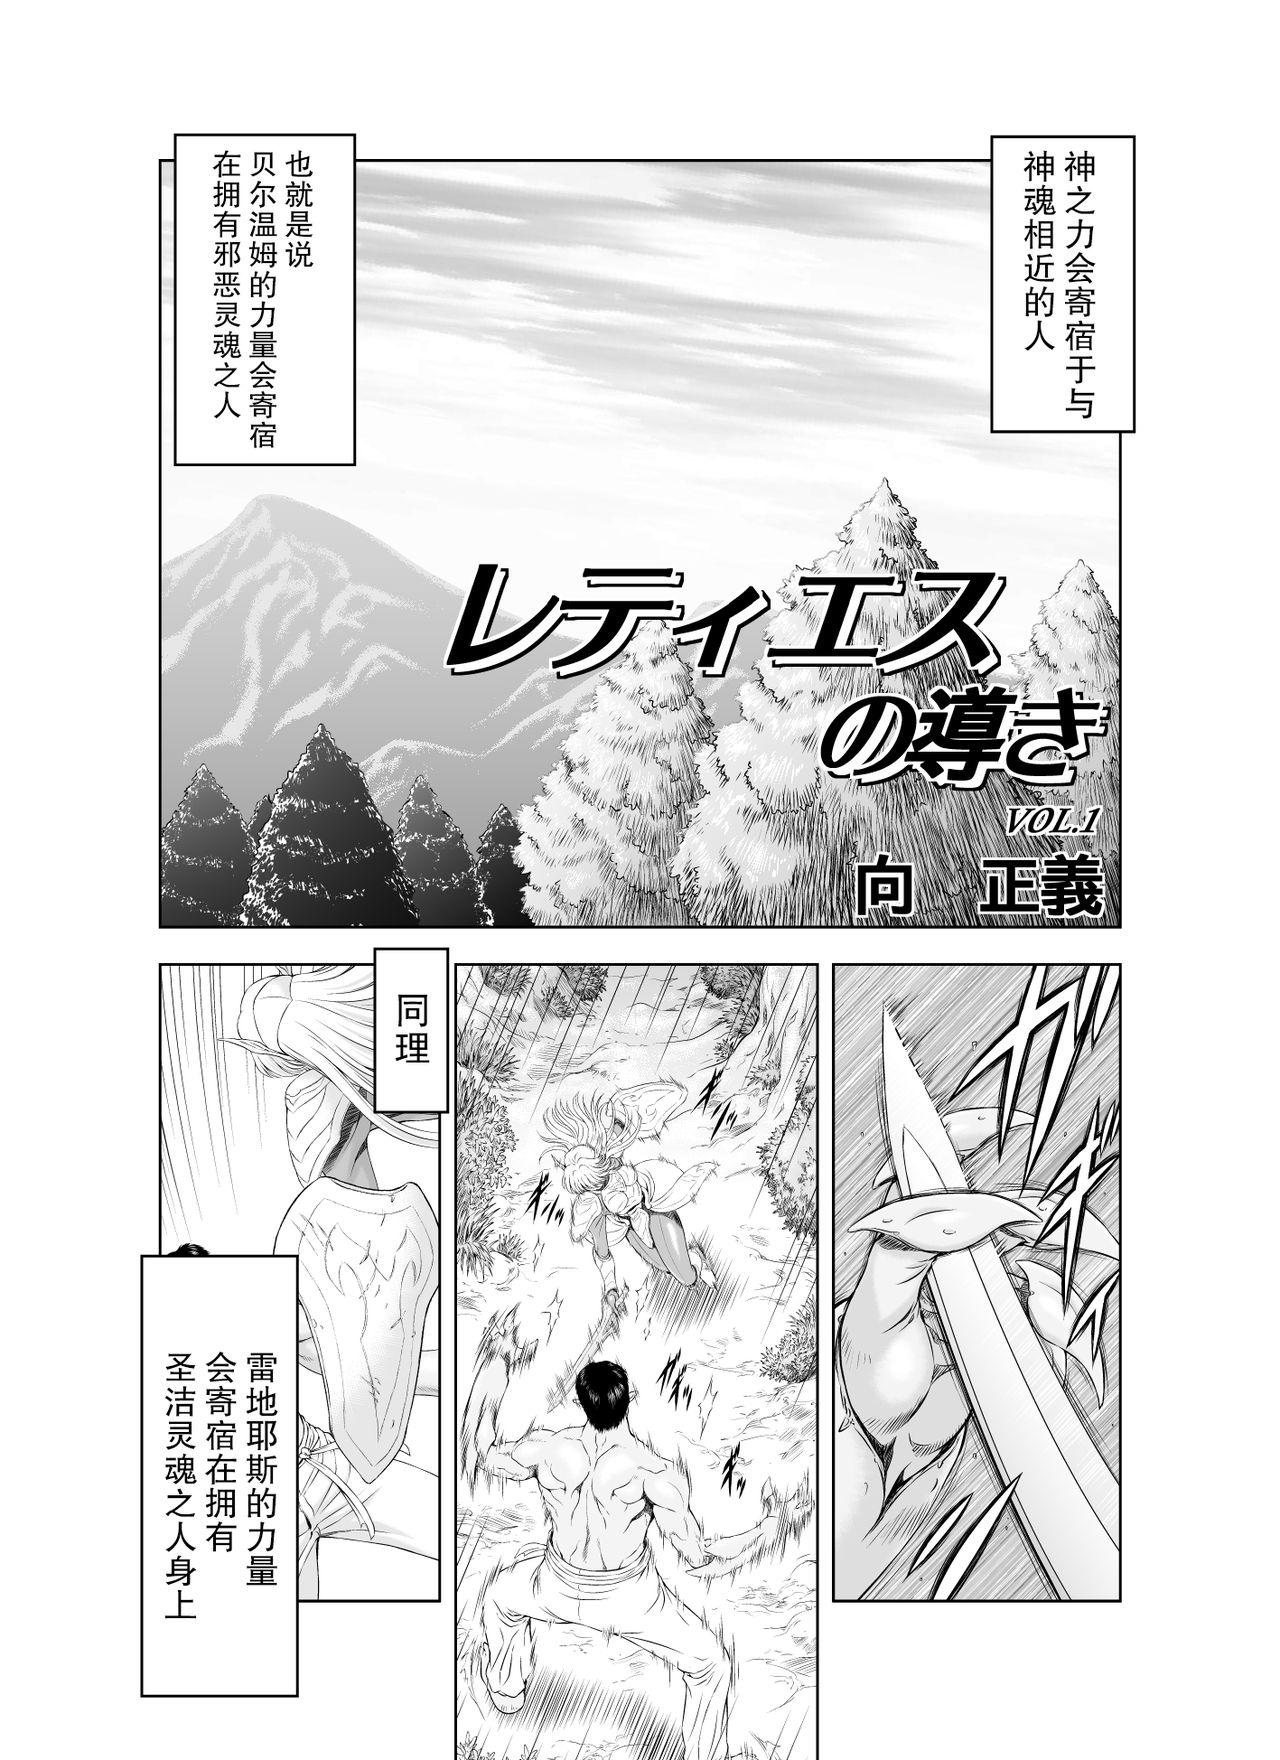 Reties no Michibiki Vol1-7 2